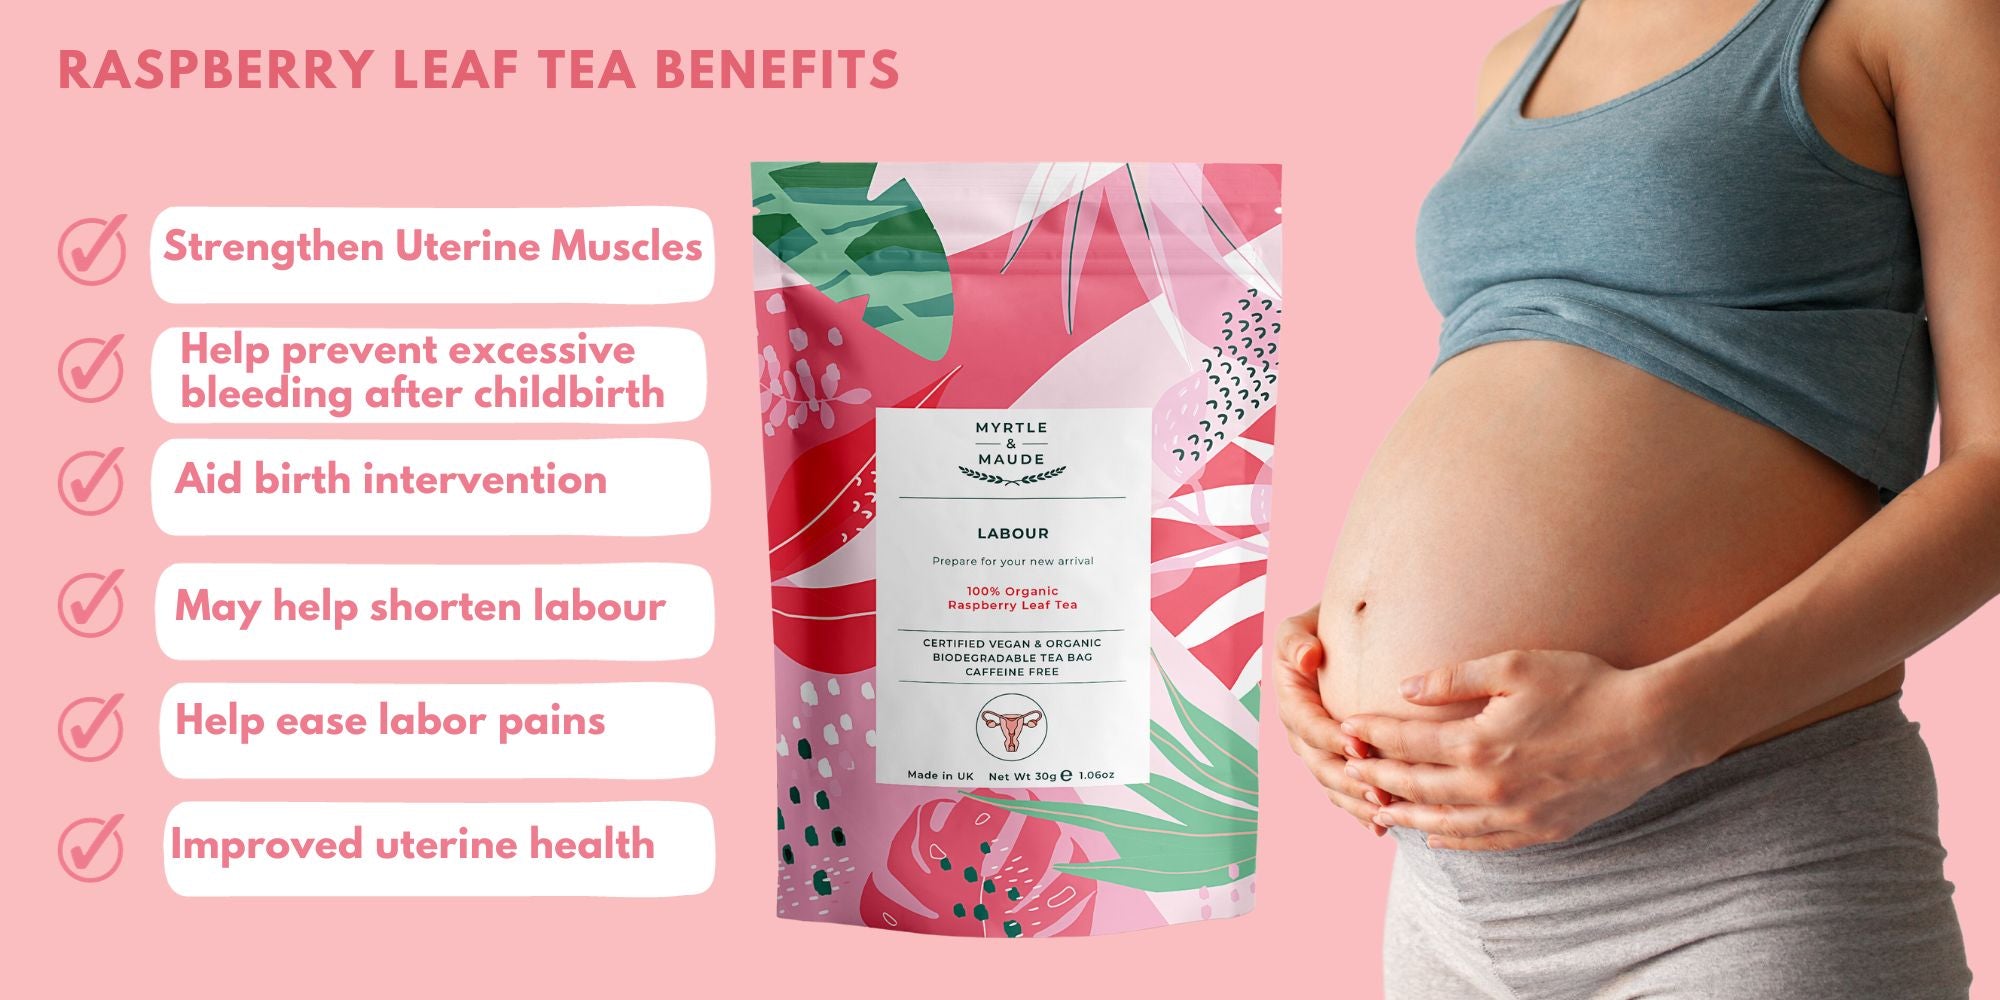 Raspberry leaf tea in pregnancy